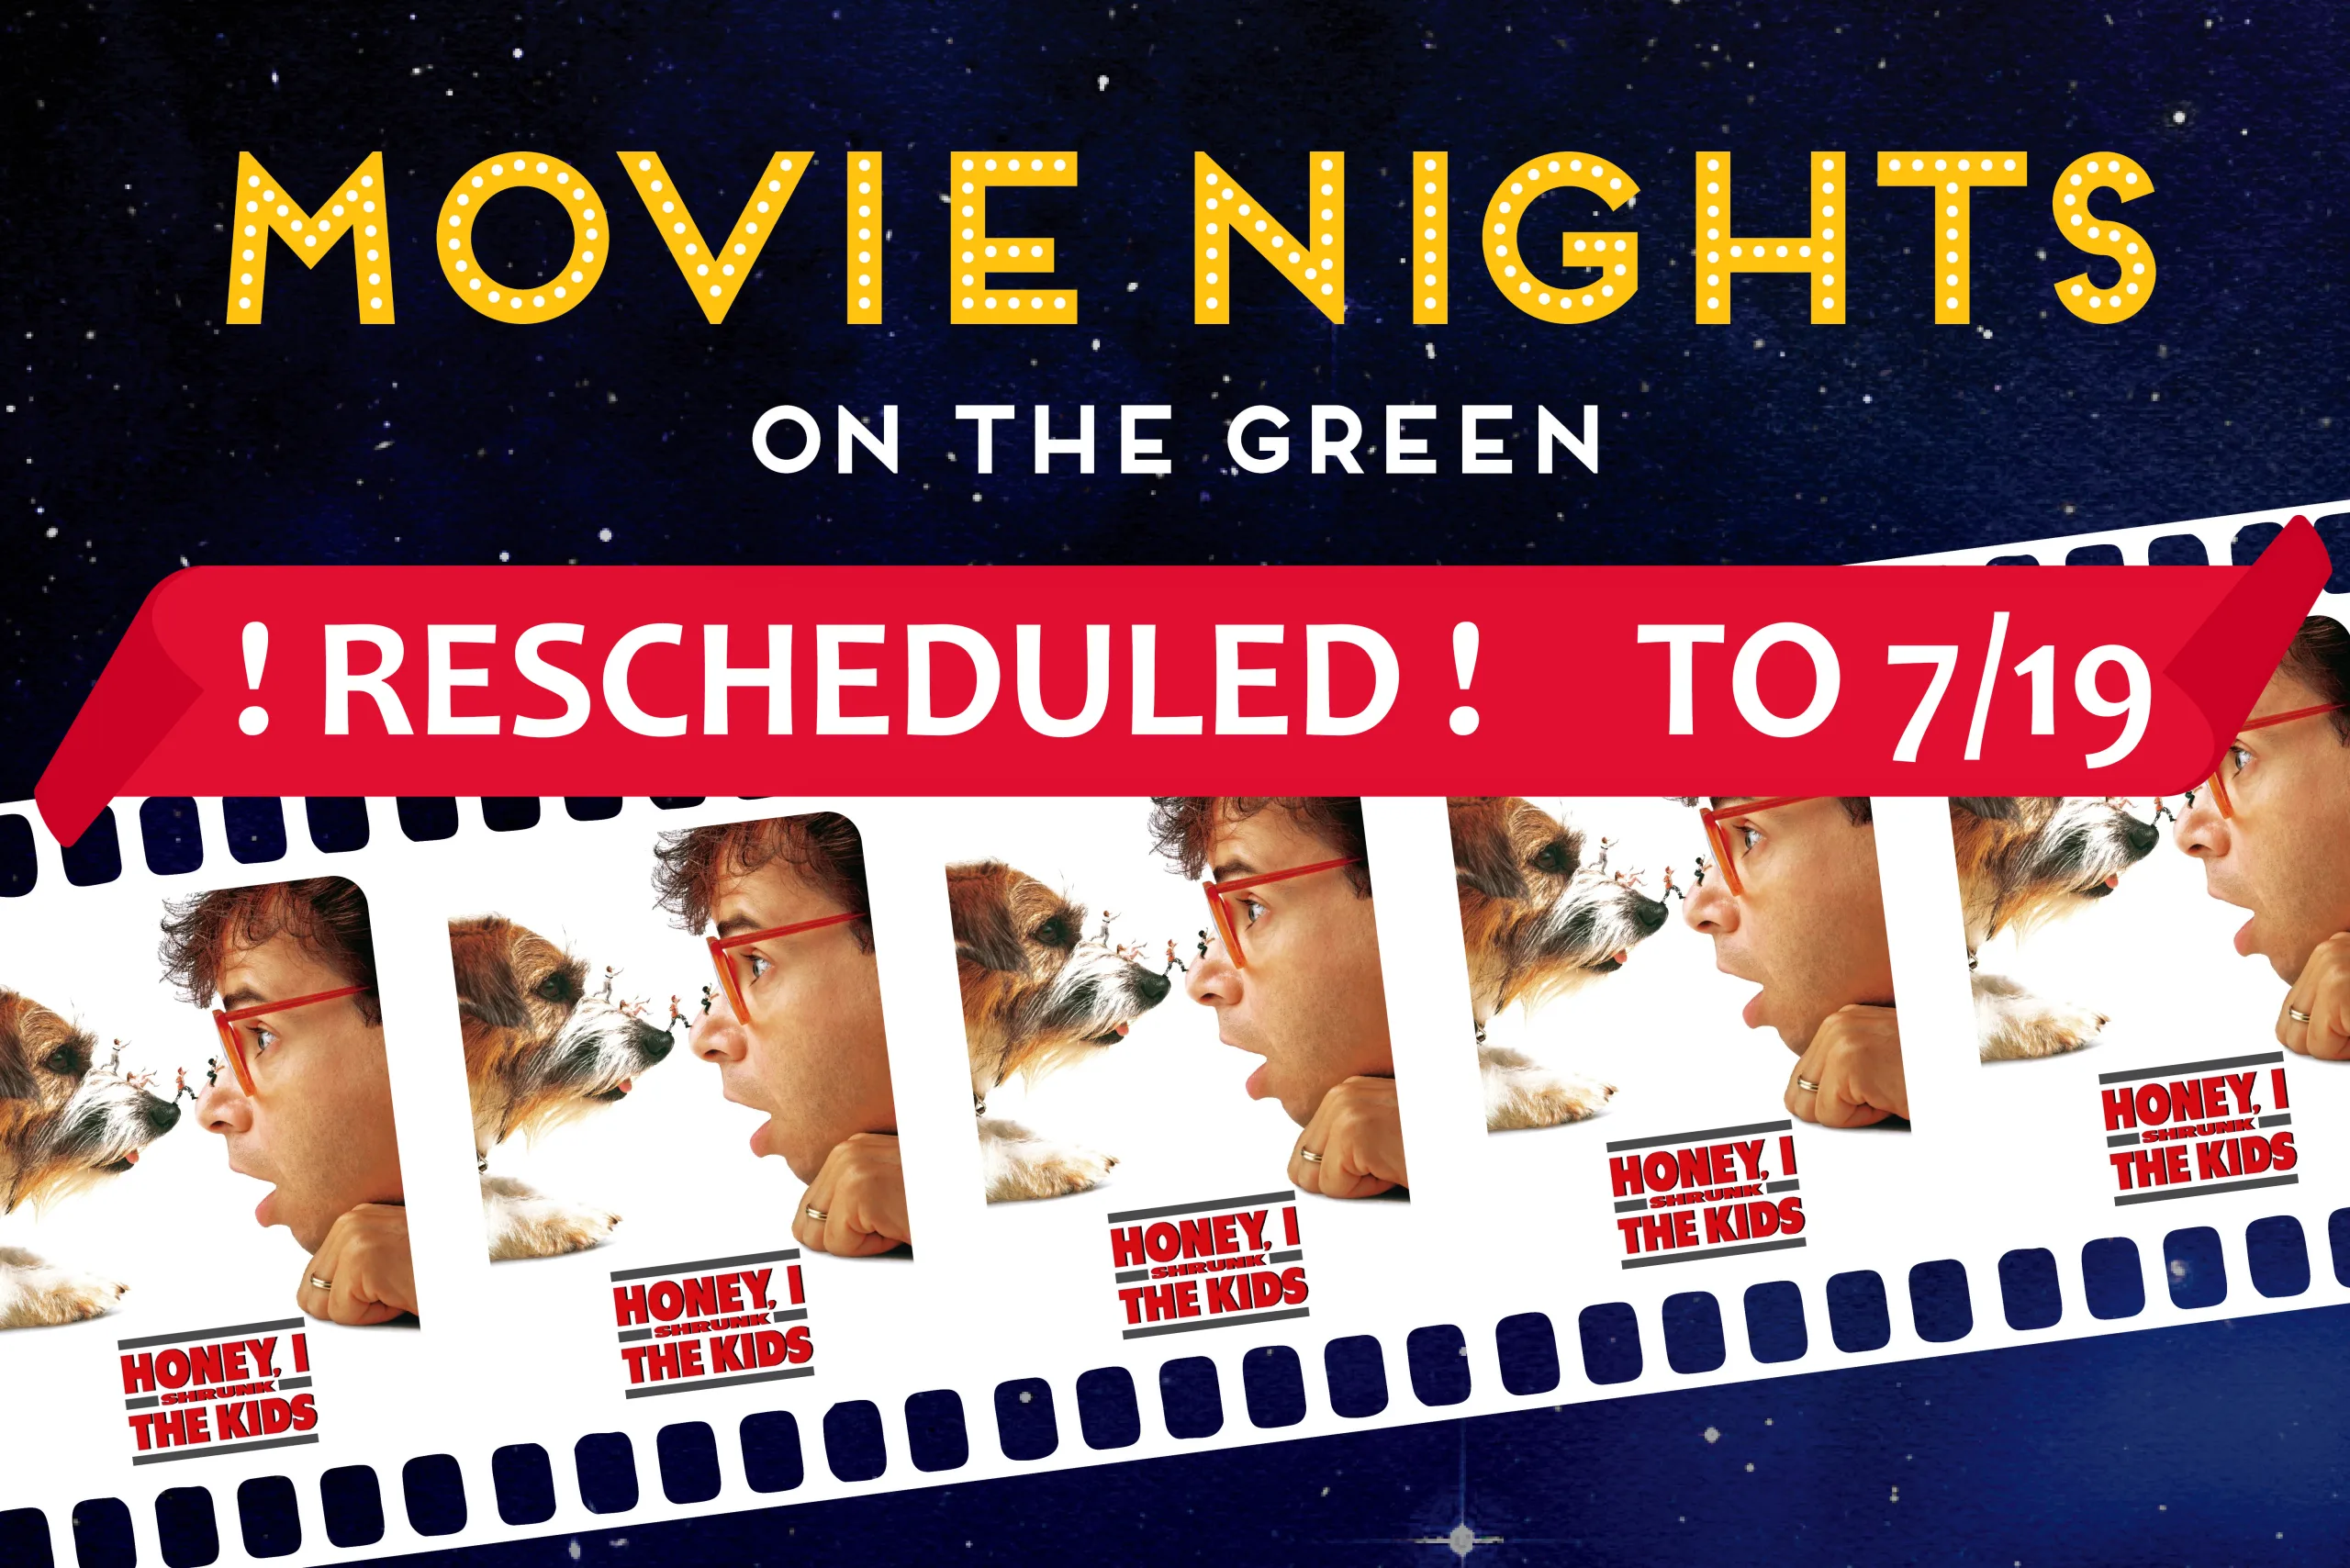 movie nights rescheduled to 7/19